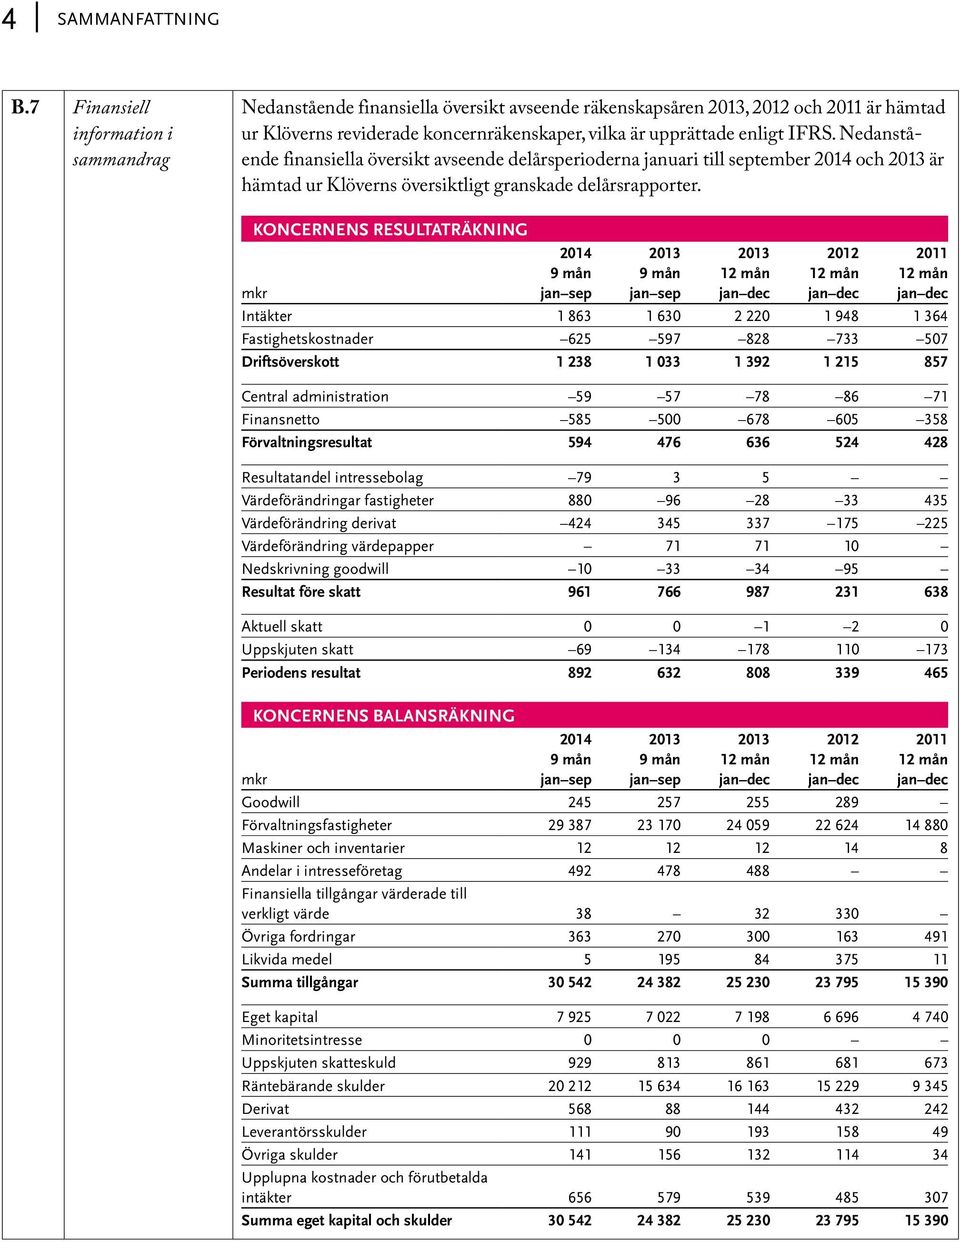 IFRS. Nedanstående finansiella översikt avseende delårsperioderna januari till september 2014 och 2013 är hämtad ur Klöverns översiktligt granskade delårsrapporter.